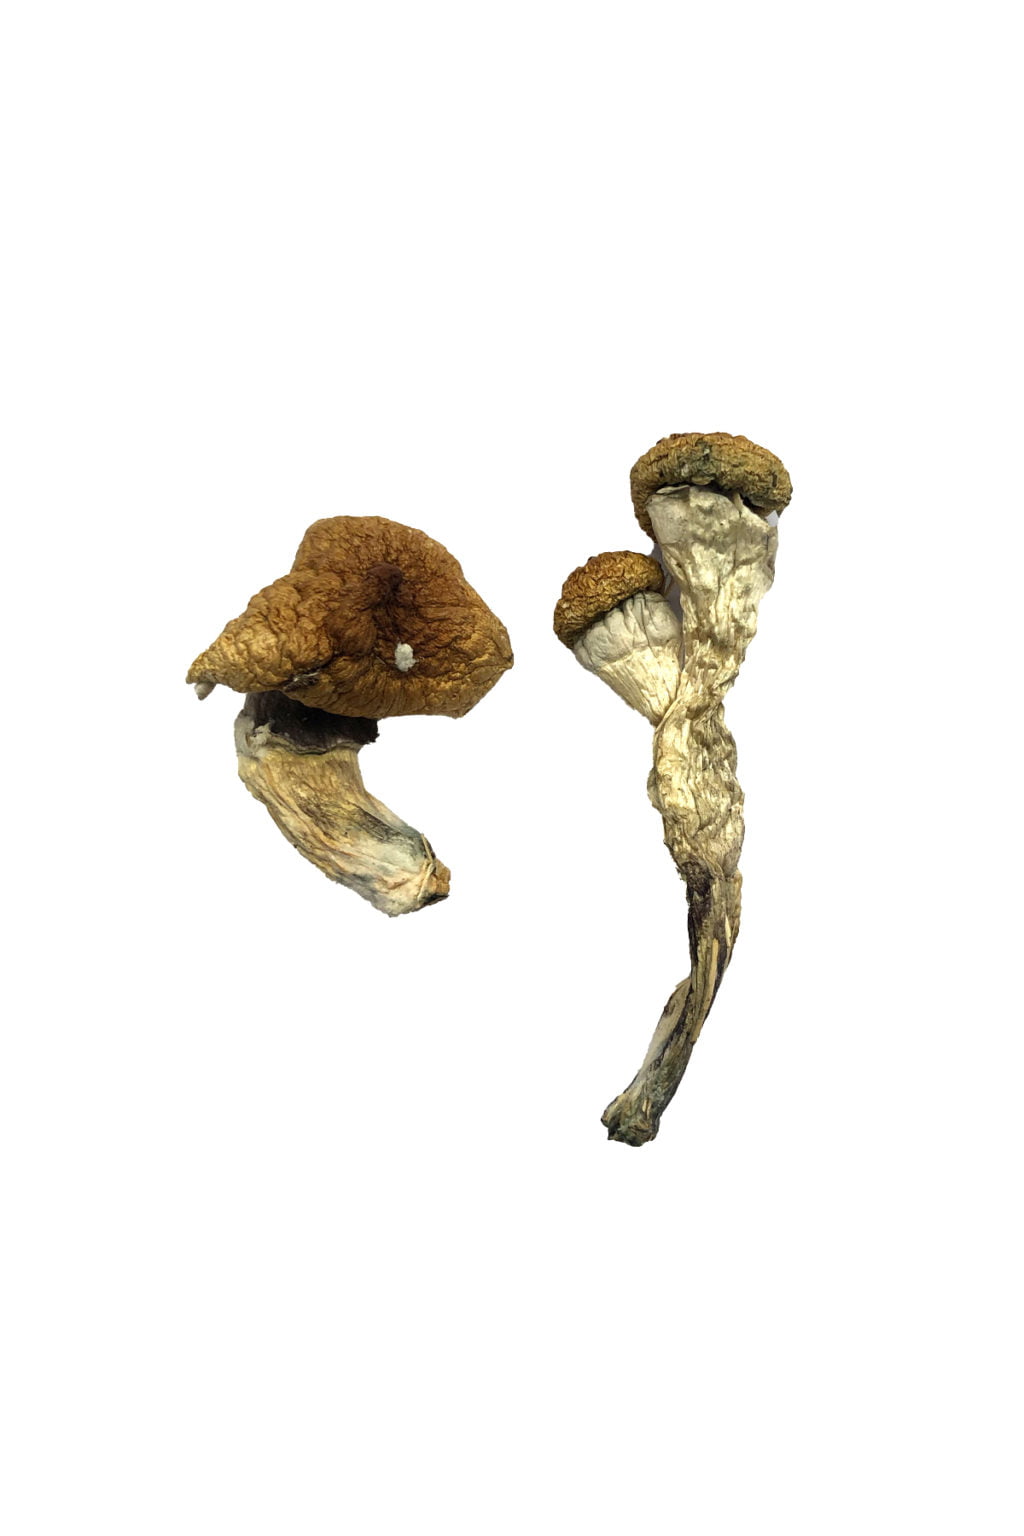 Amazonian-Magic-Mushrooms-1024x1536.jpg